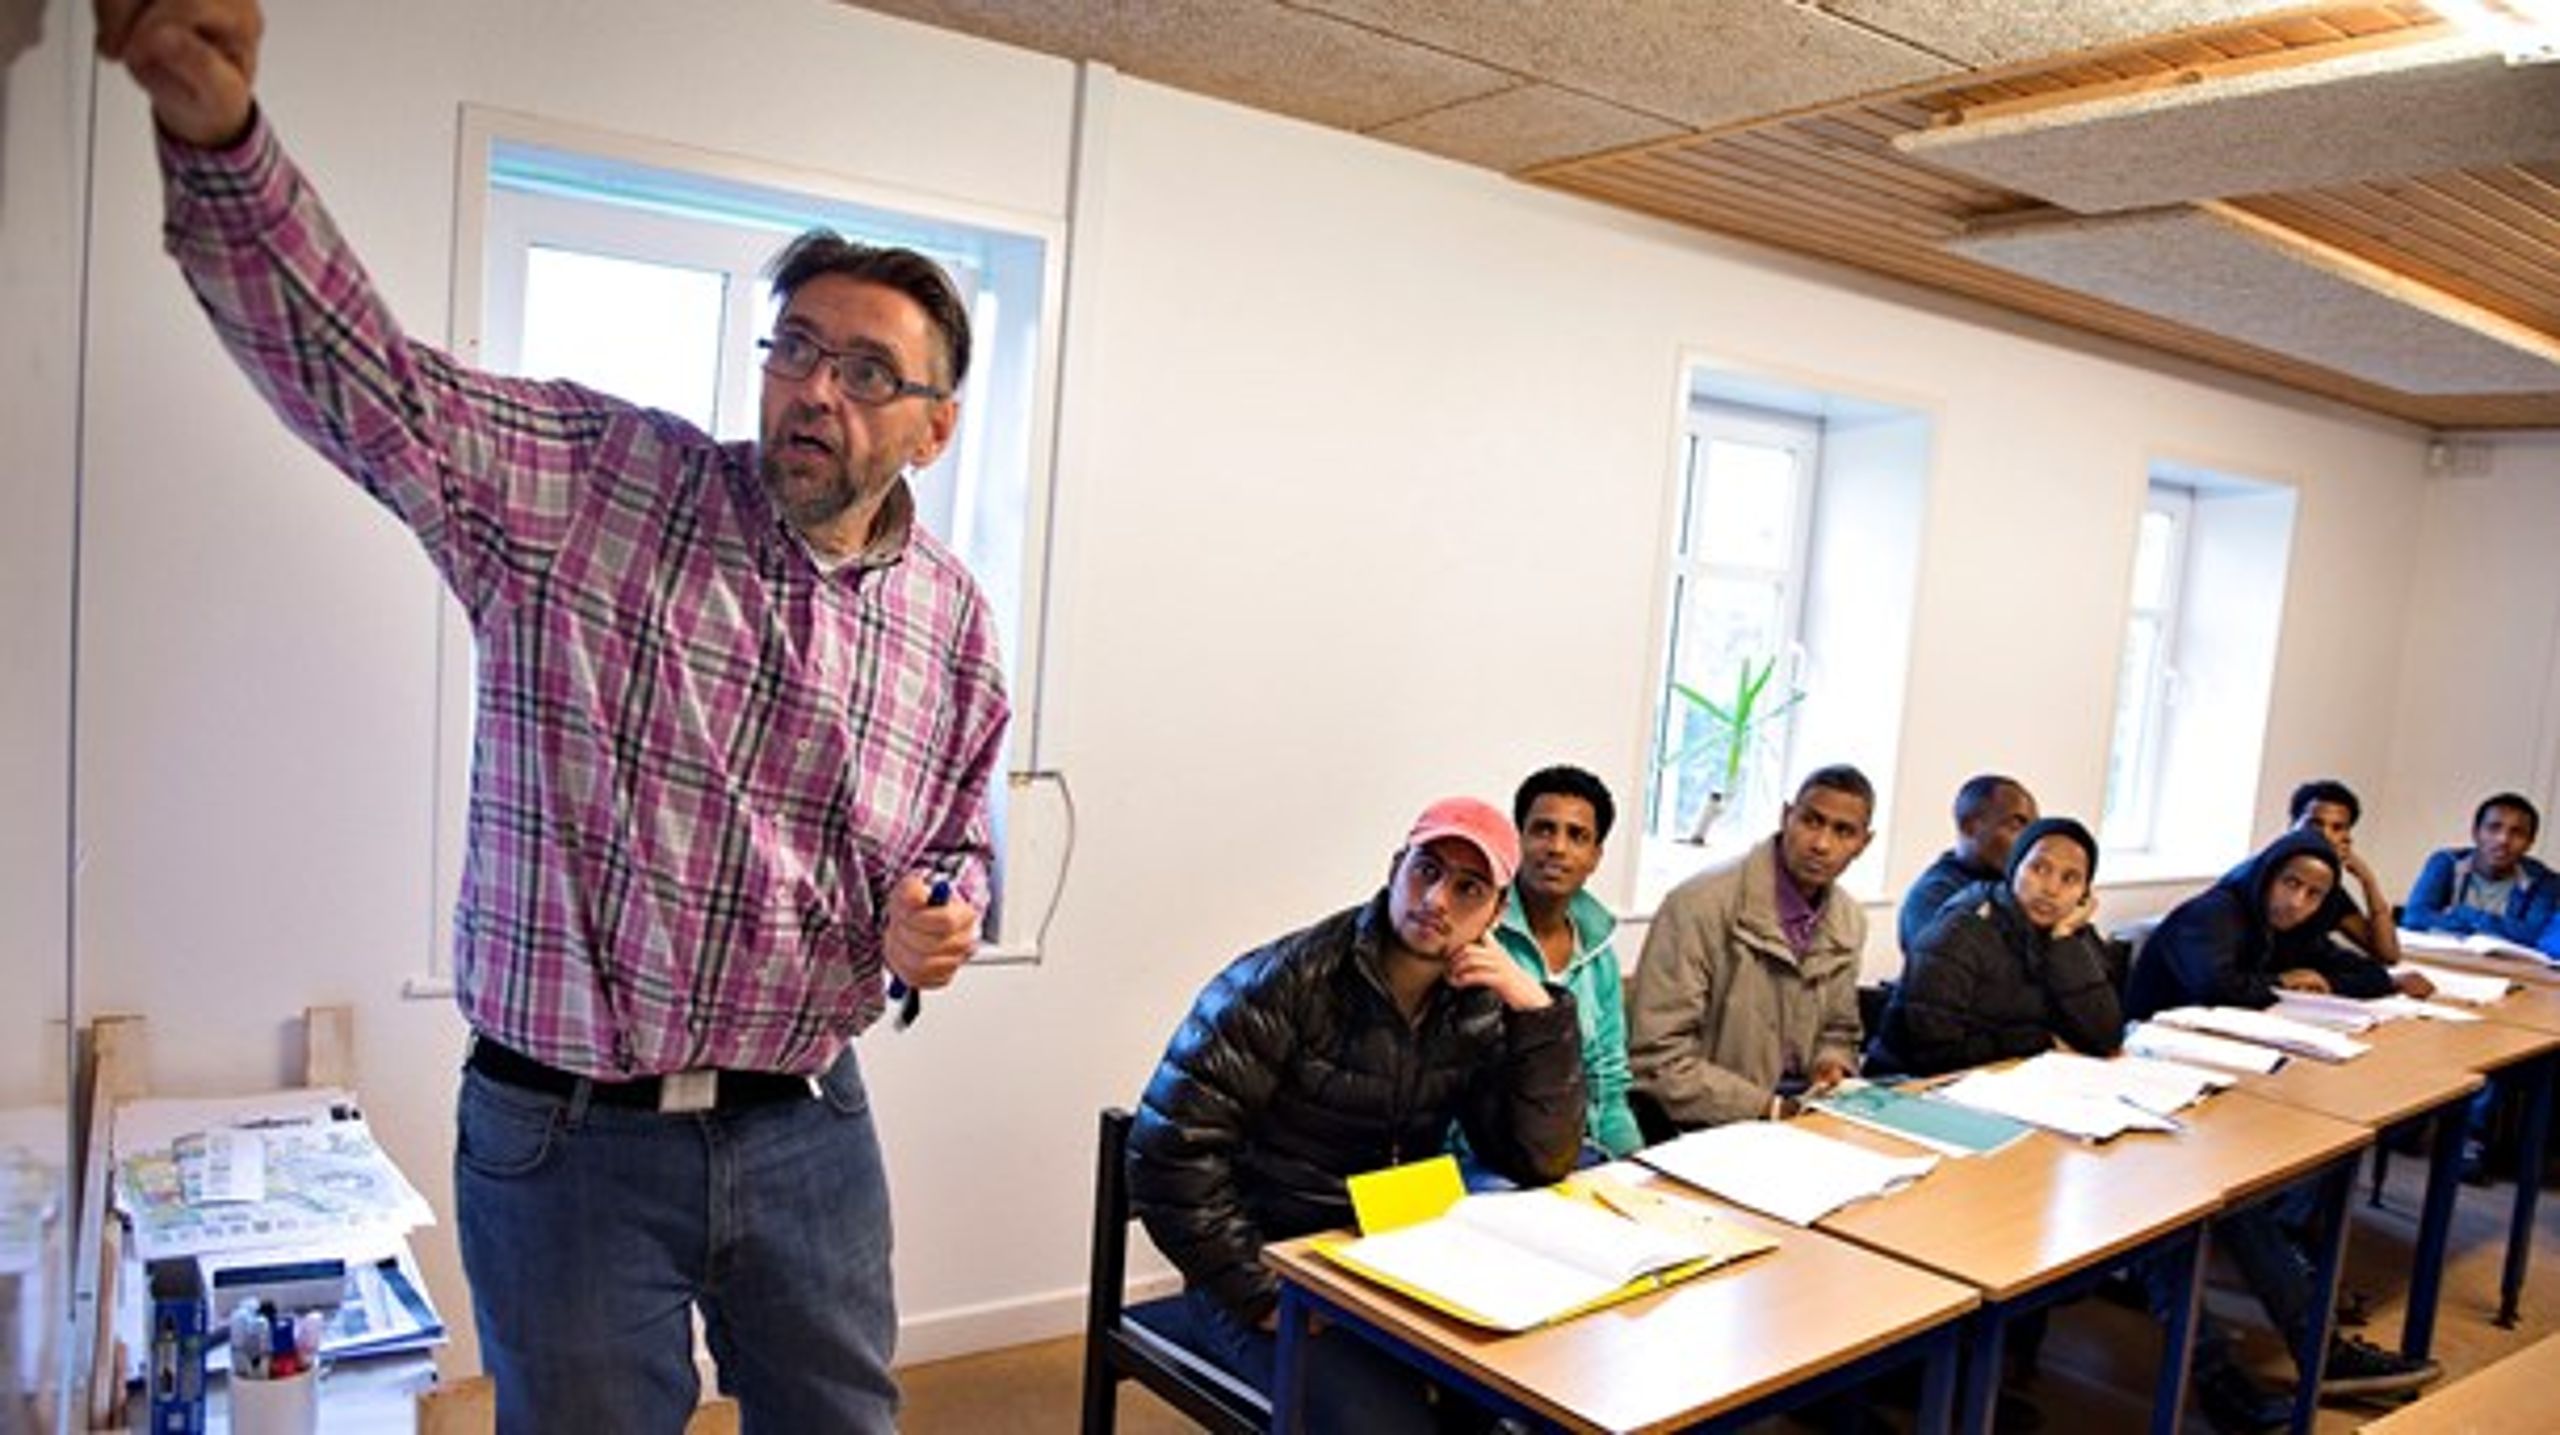 Flygtninge modtager danskundervisning på Vrå Højskole.